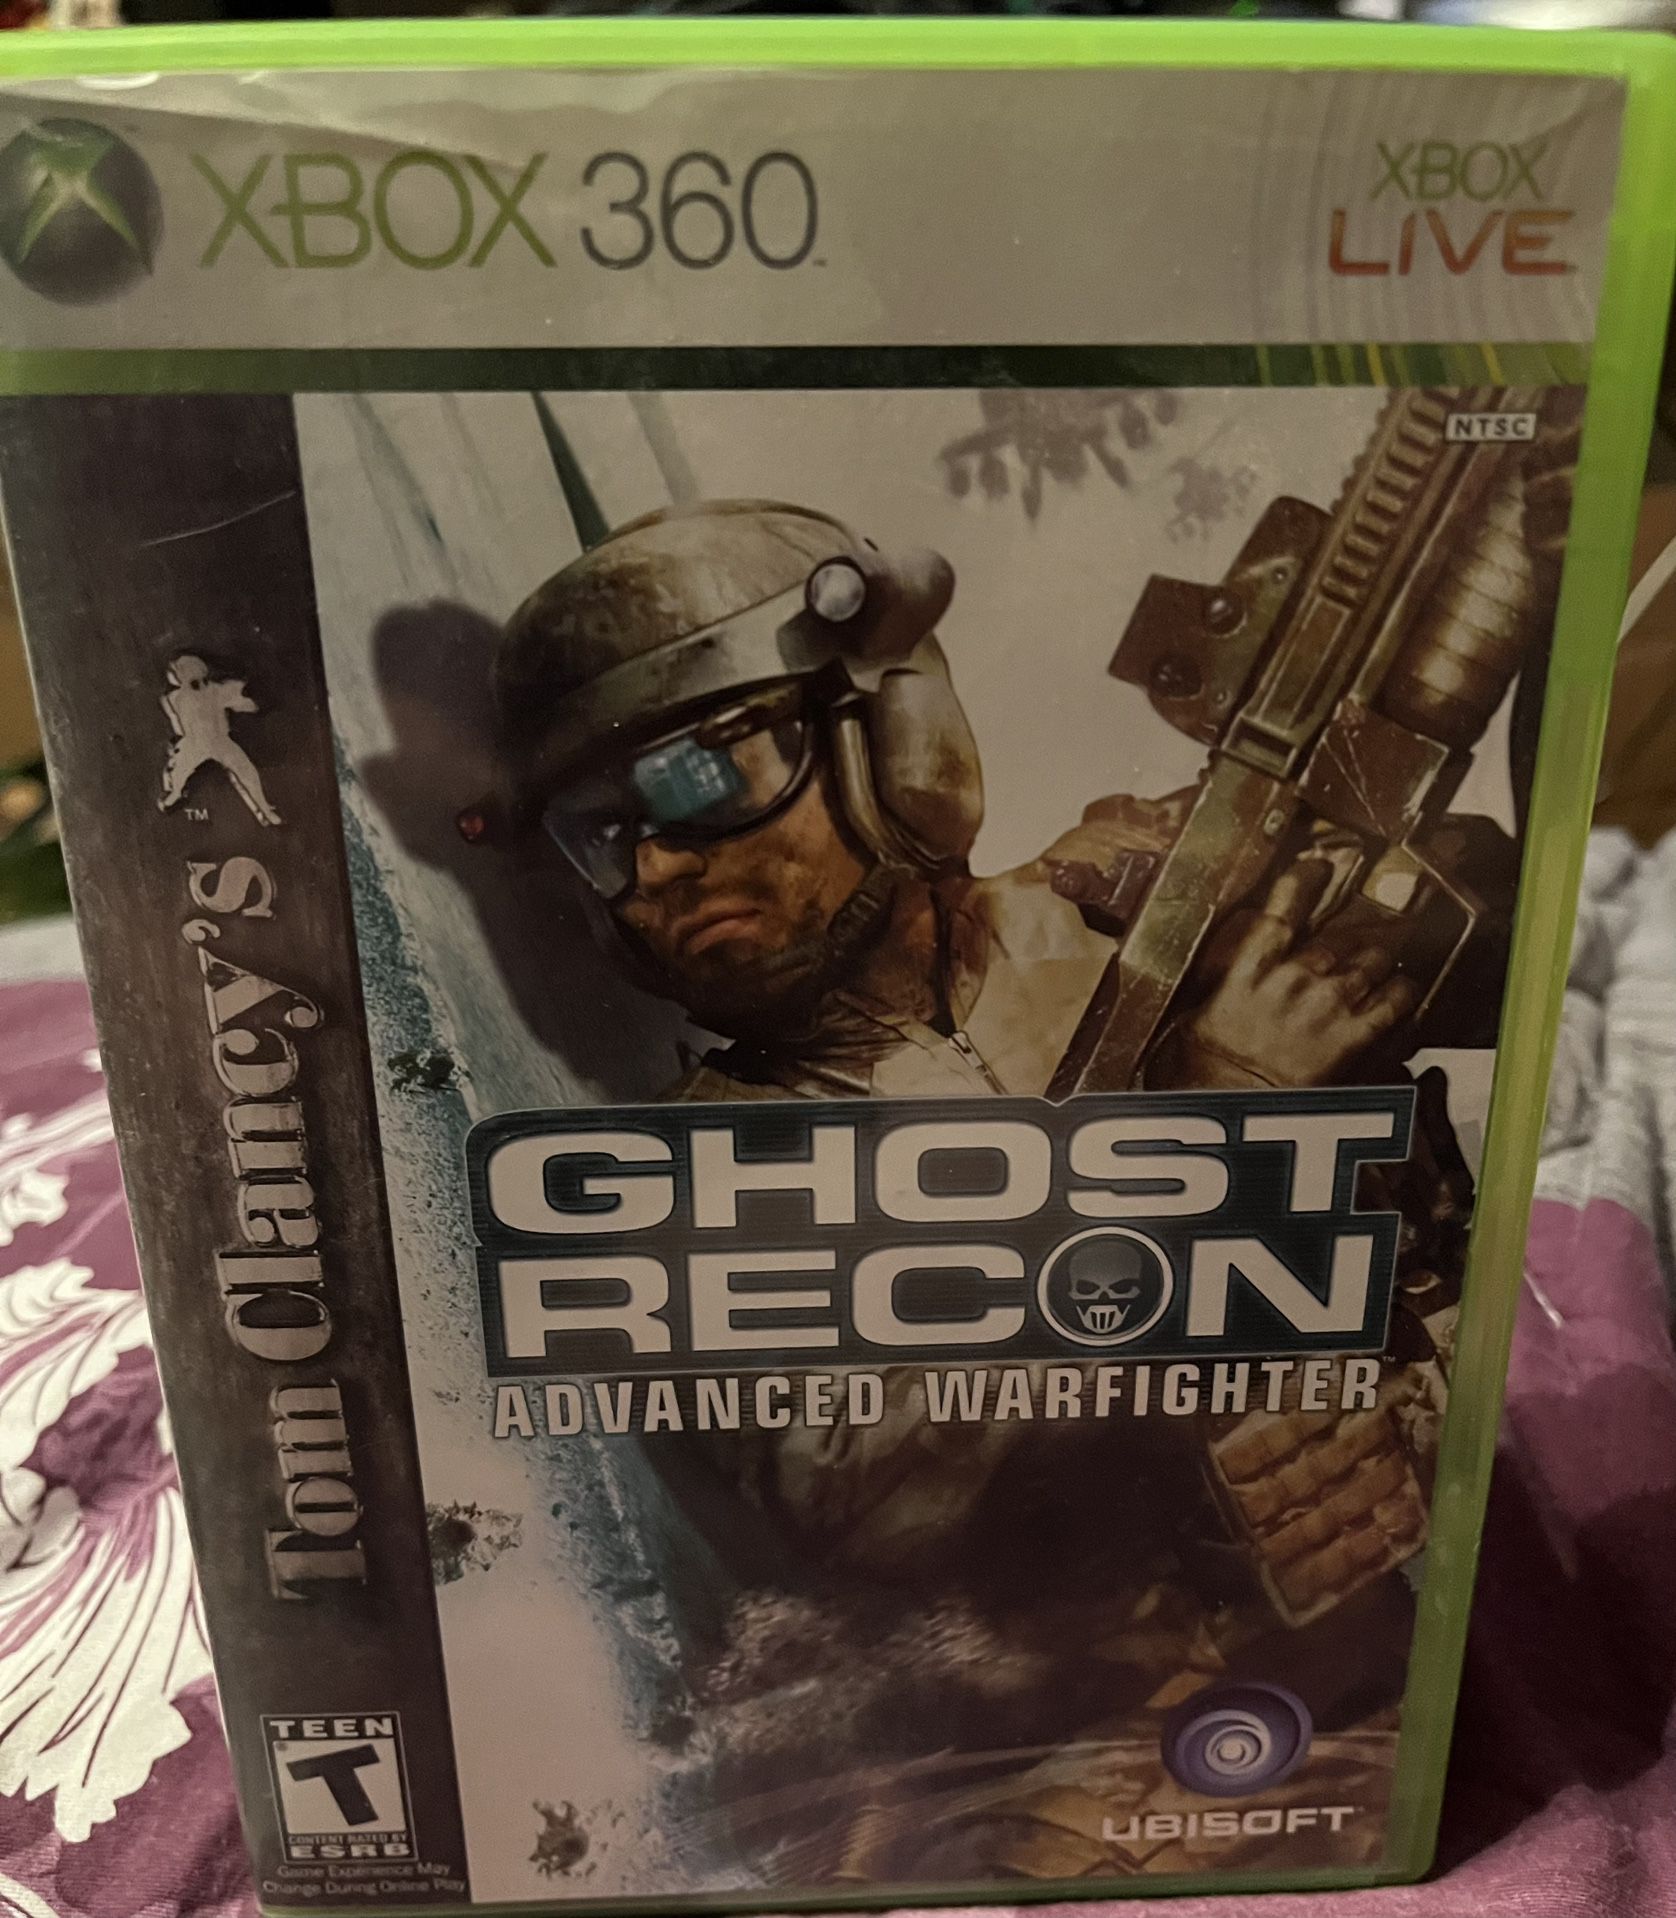 Xbox 360 Ghost Recon Advanced Warfighter